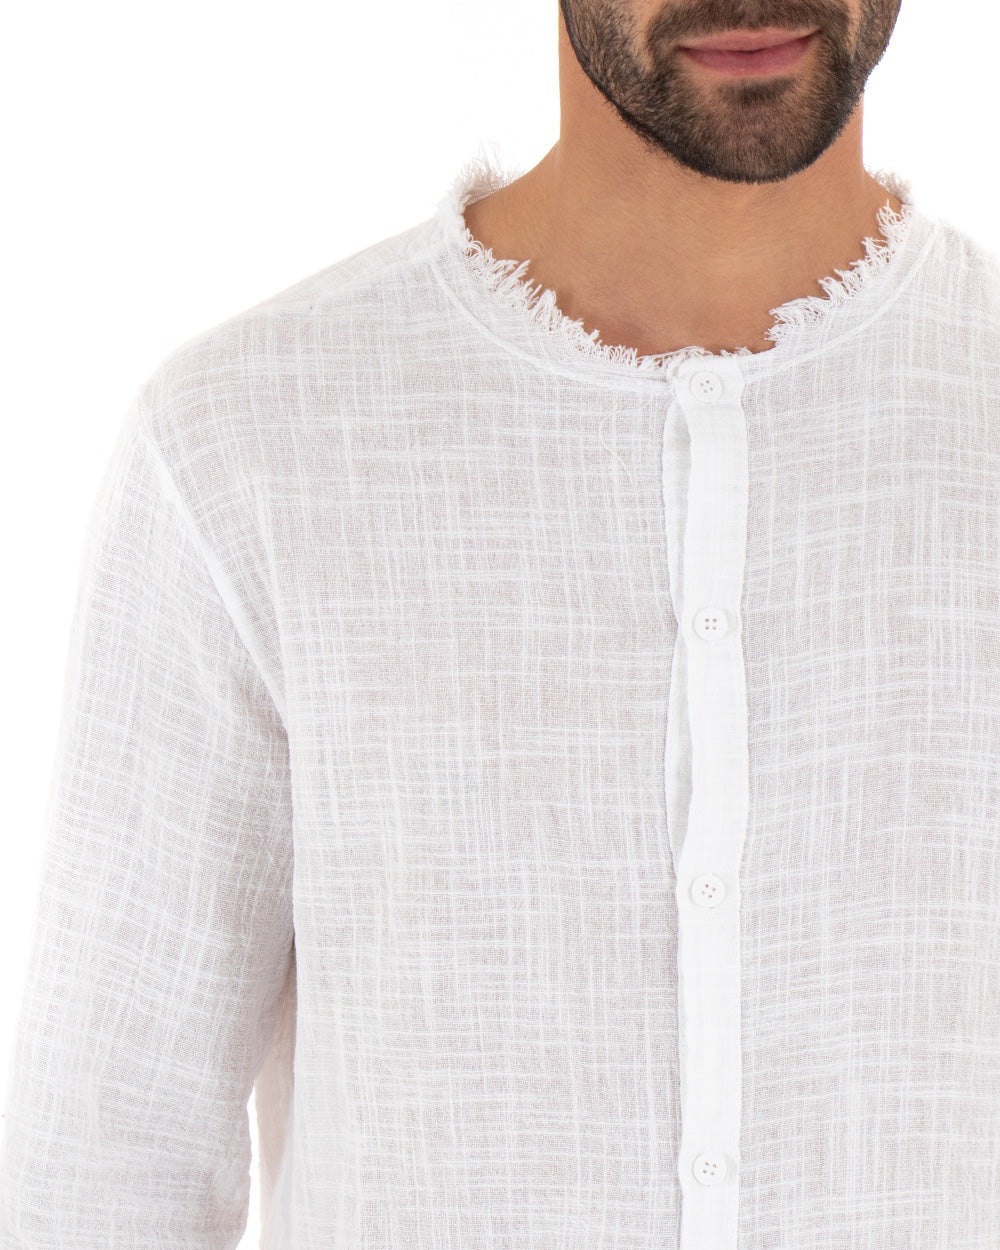 Camicia Uomo Sfrangiata Tinta Unita Bianco Manica Lunga Casual Cotone Lino GIOSAL-C2729A